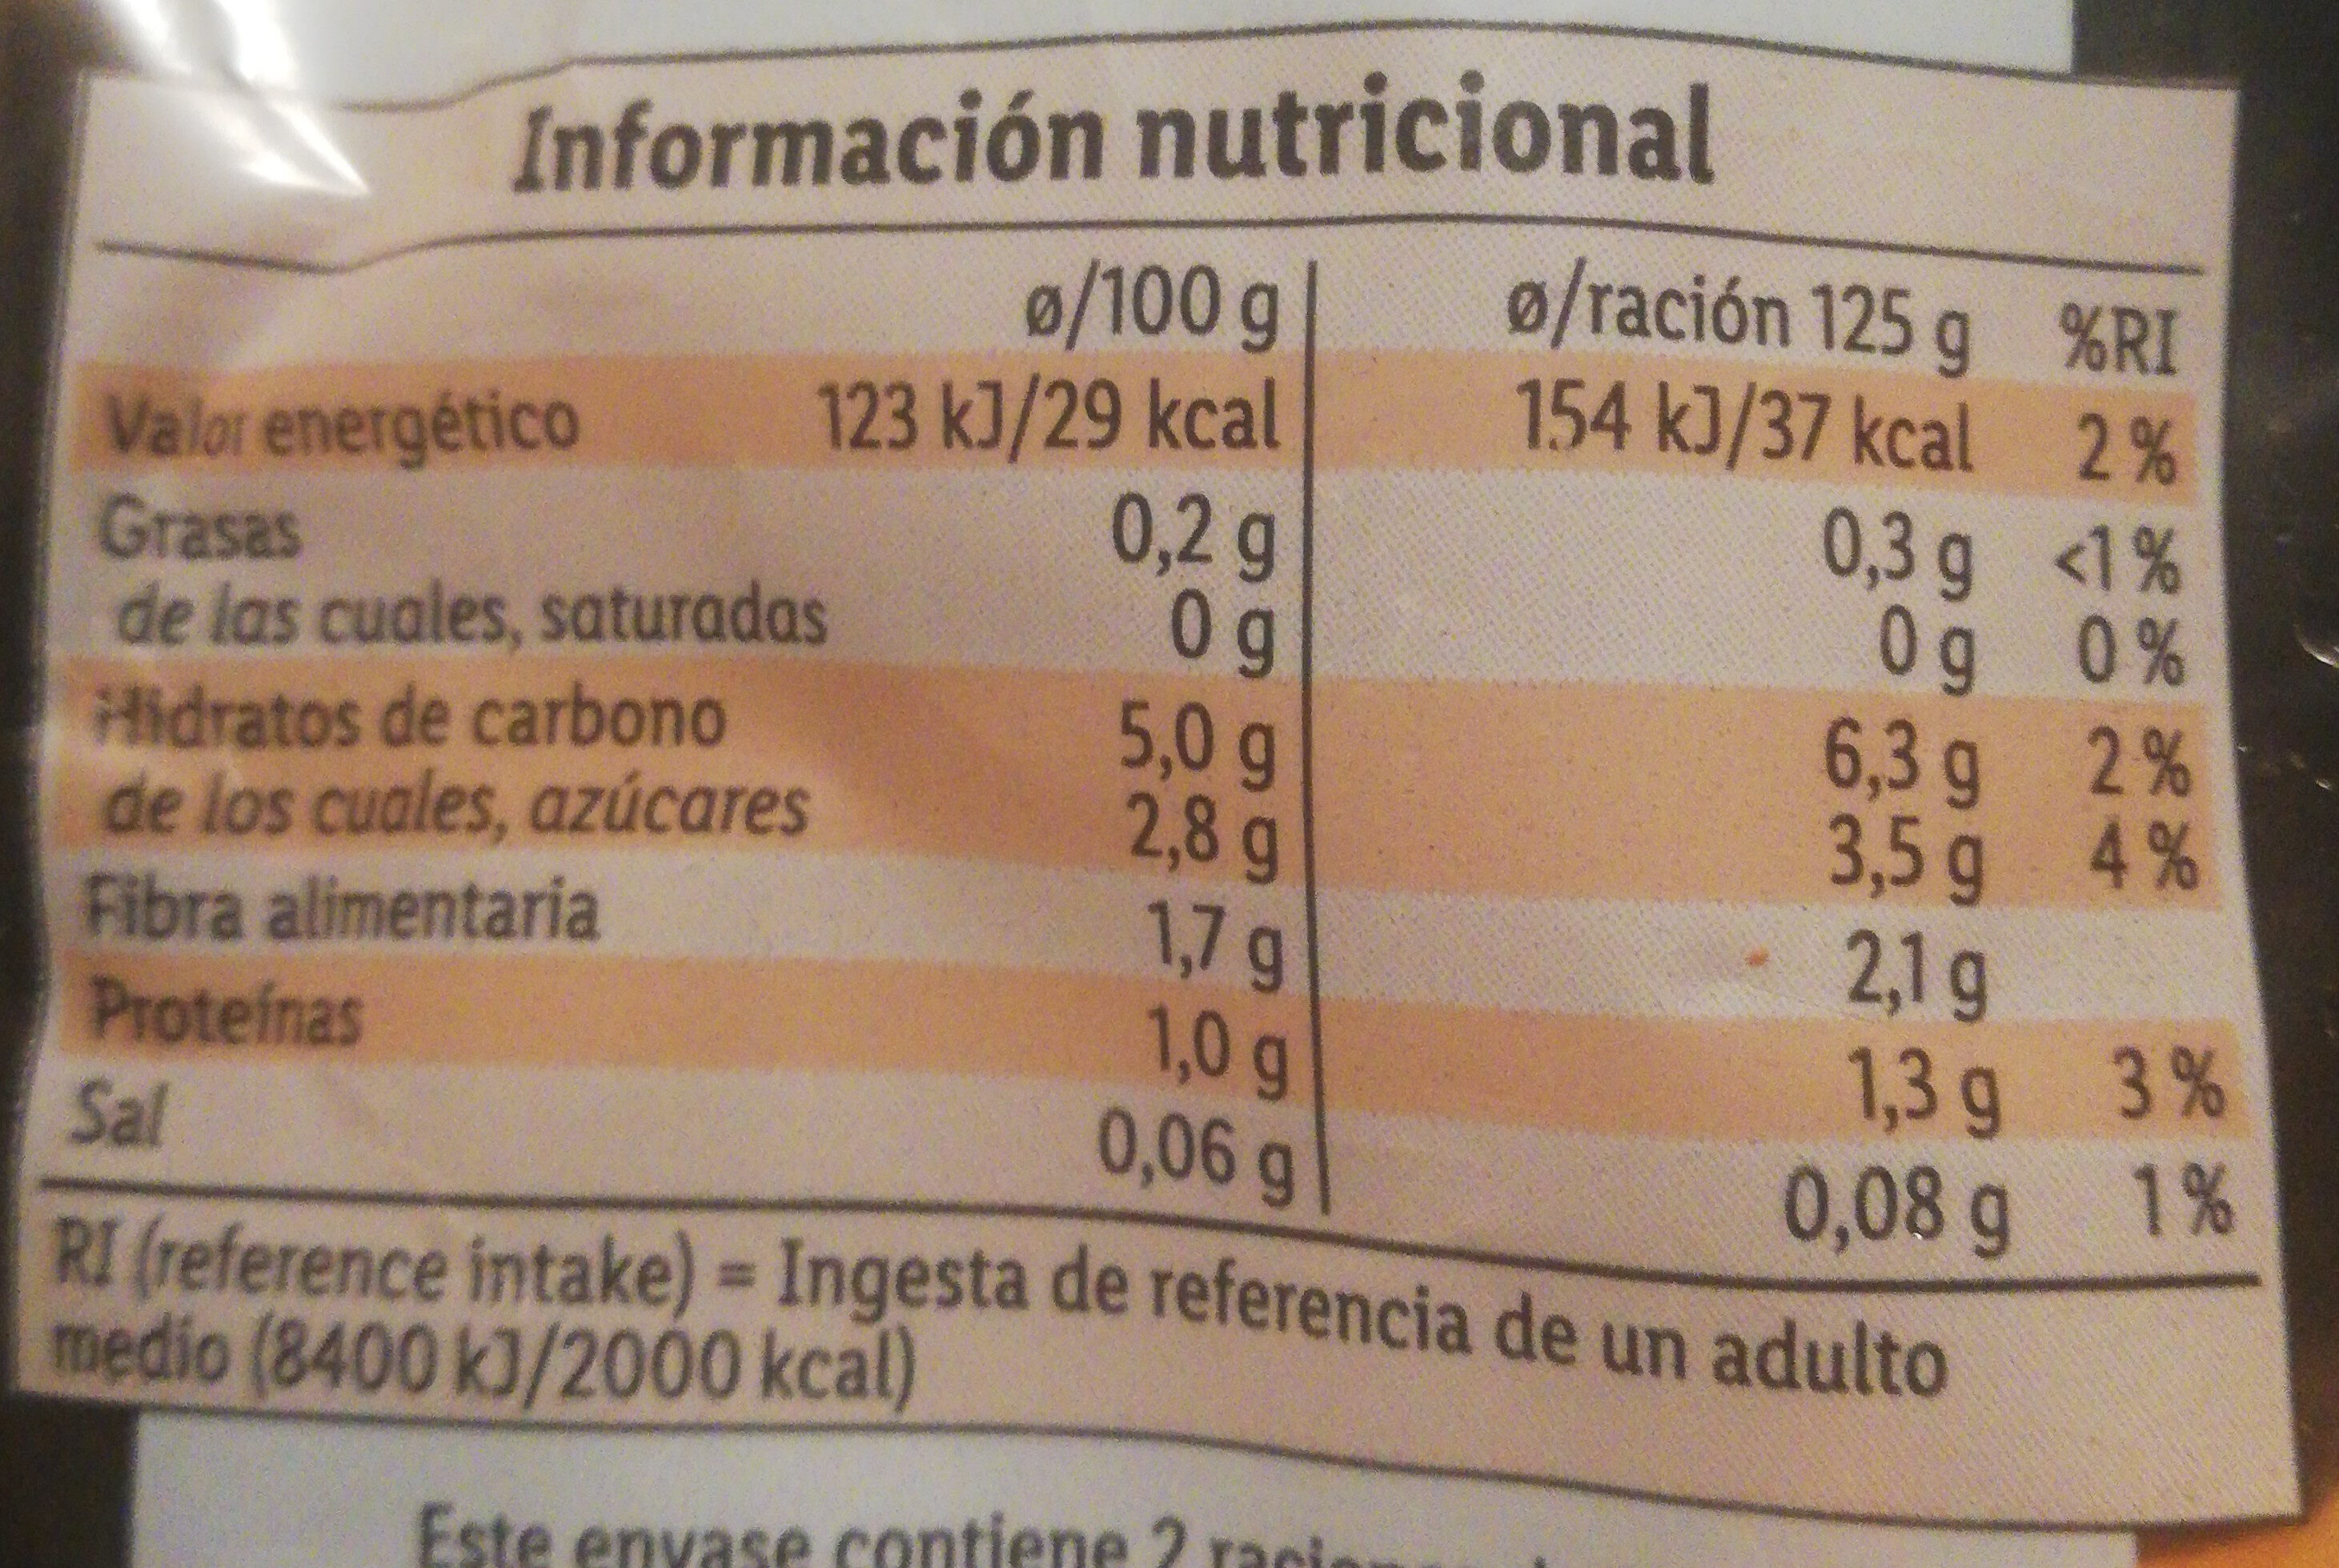 Edulis ensalada 4 estaciones - Información nutricional